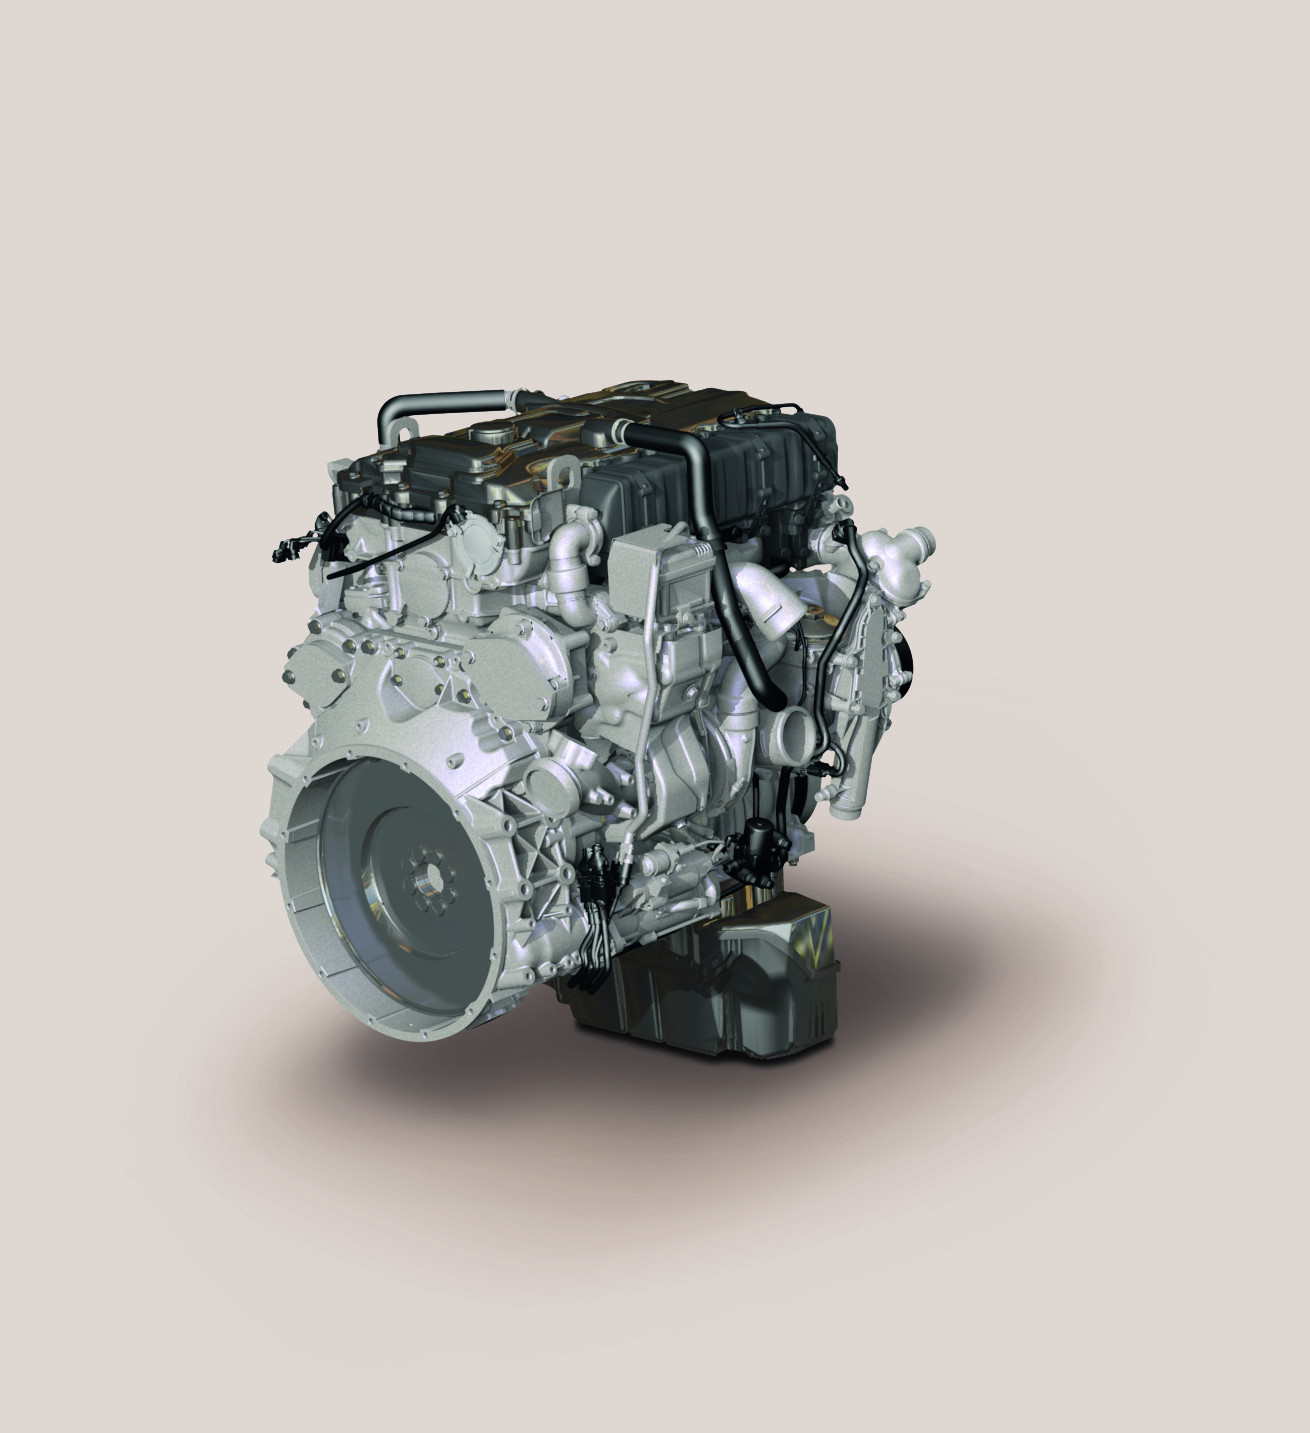 mtu diesel engine parts sell-mtu engine parts supplier